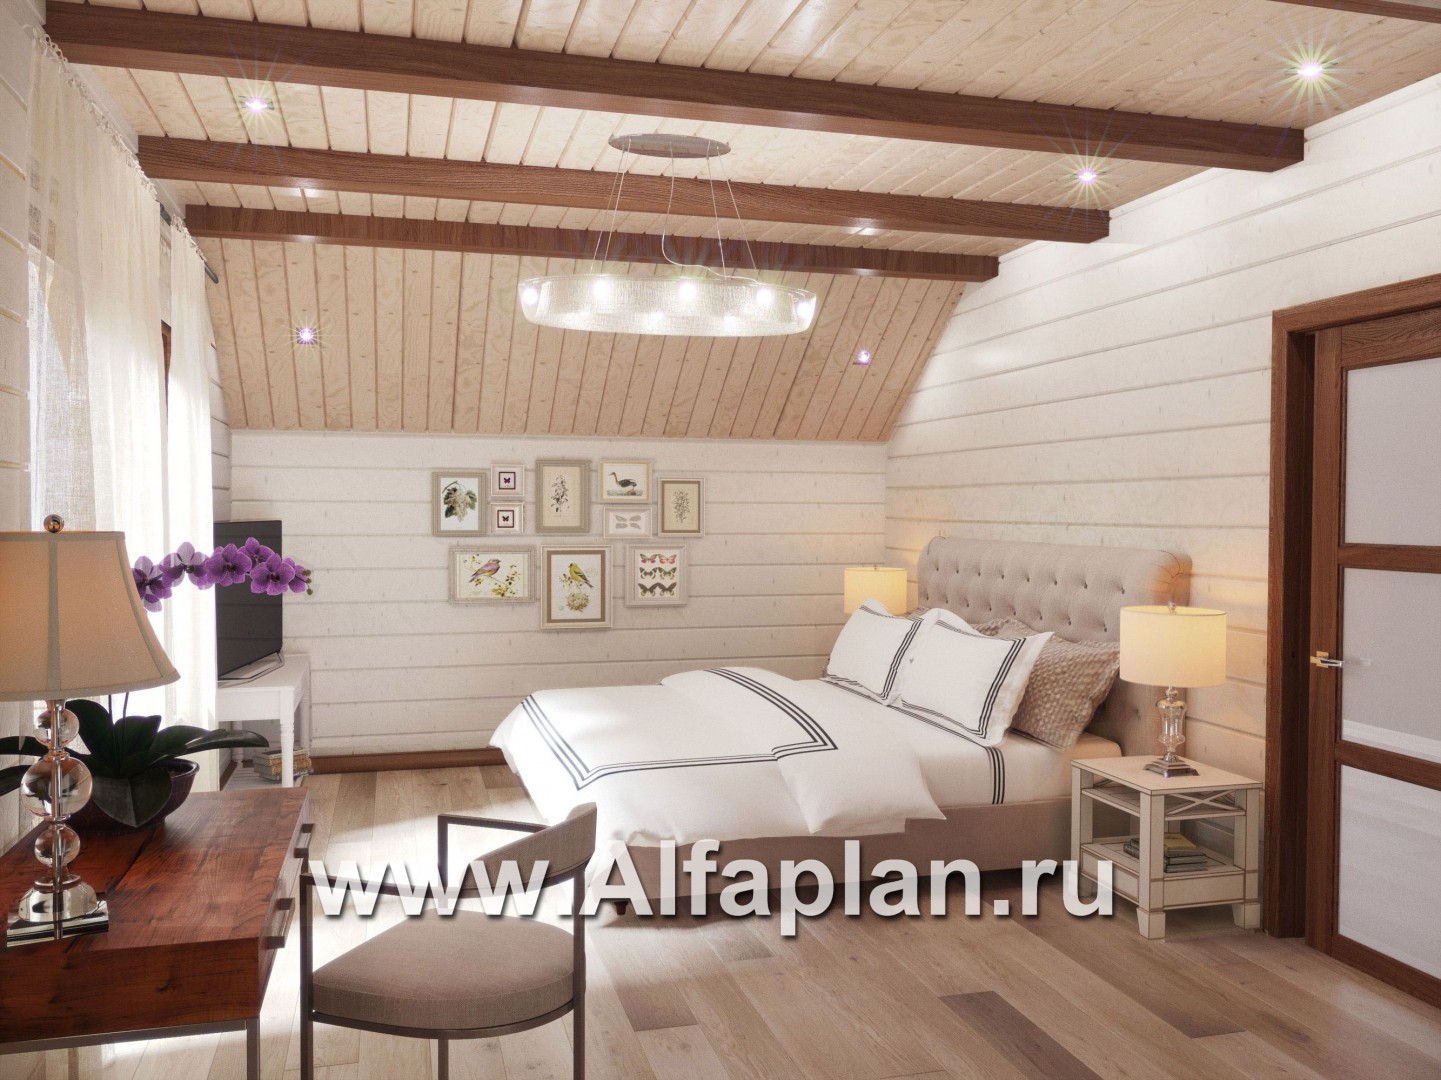 Проекты домов Альфаплан - Комфортабельный дом из бруса - дополнительное изображение №5